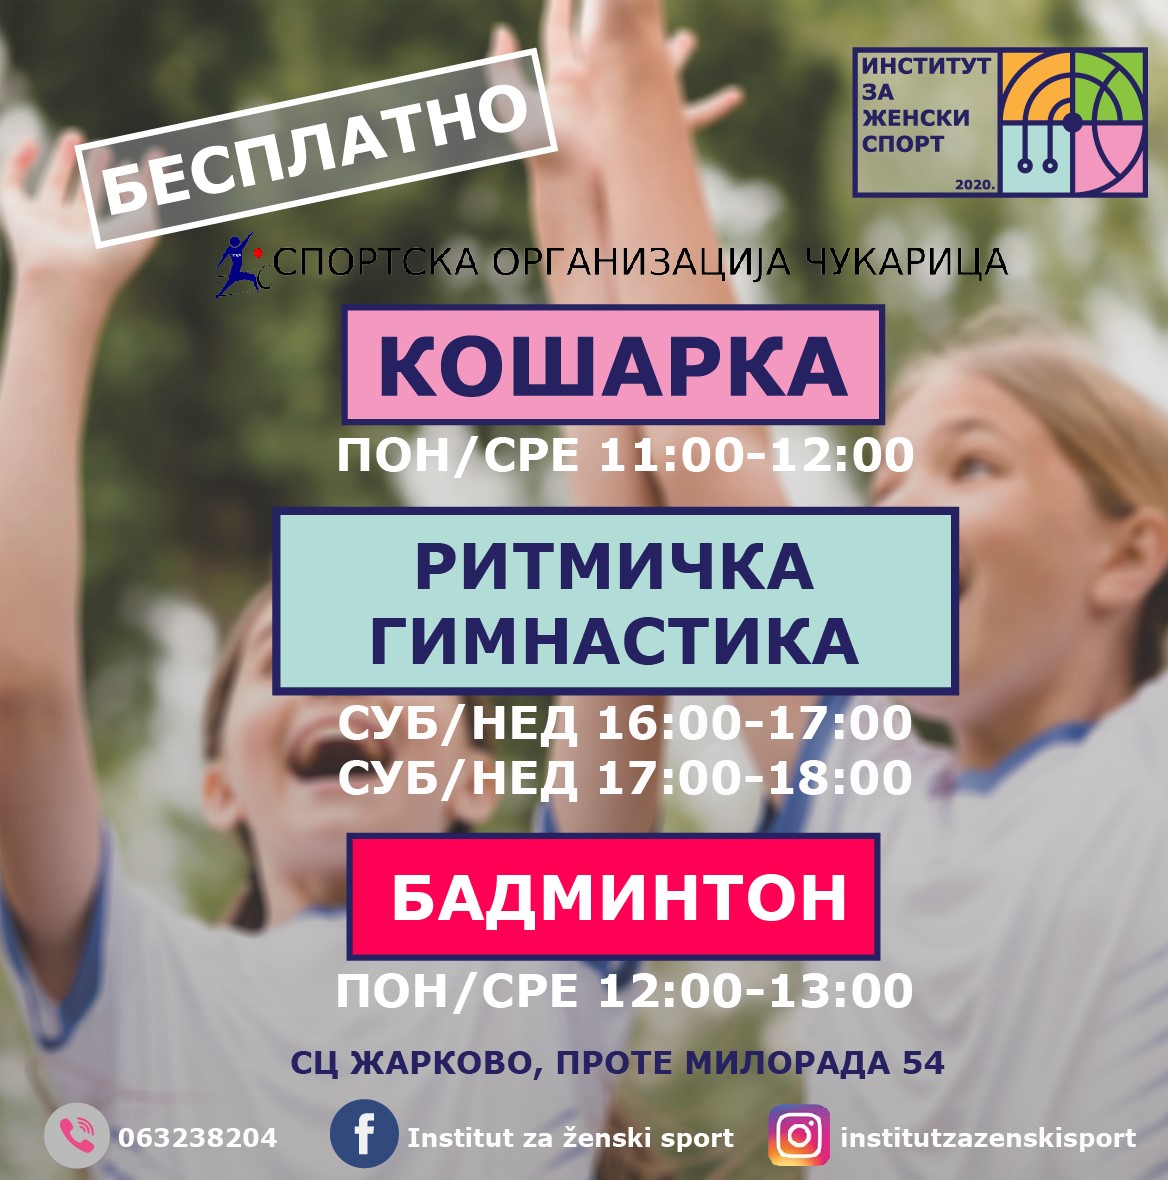 Бесплатни спортски програми за девојчице у Спортском центру Жарково